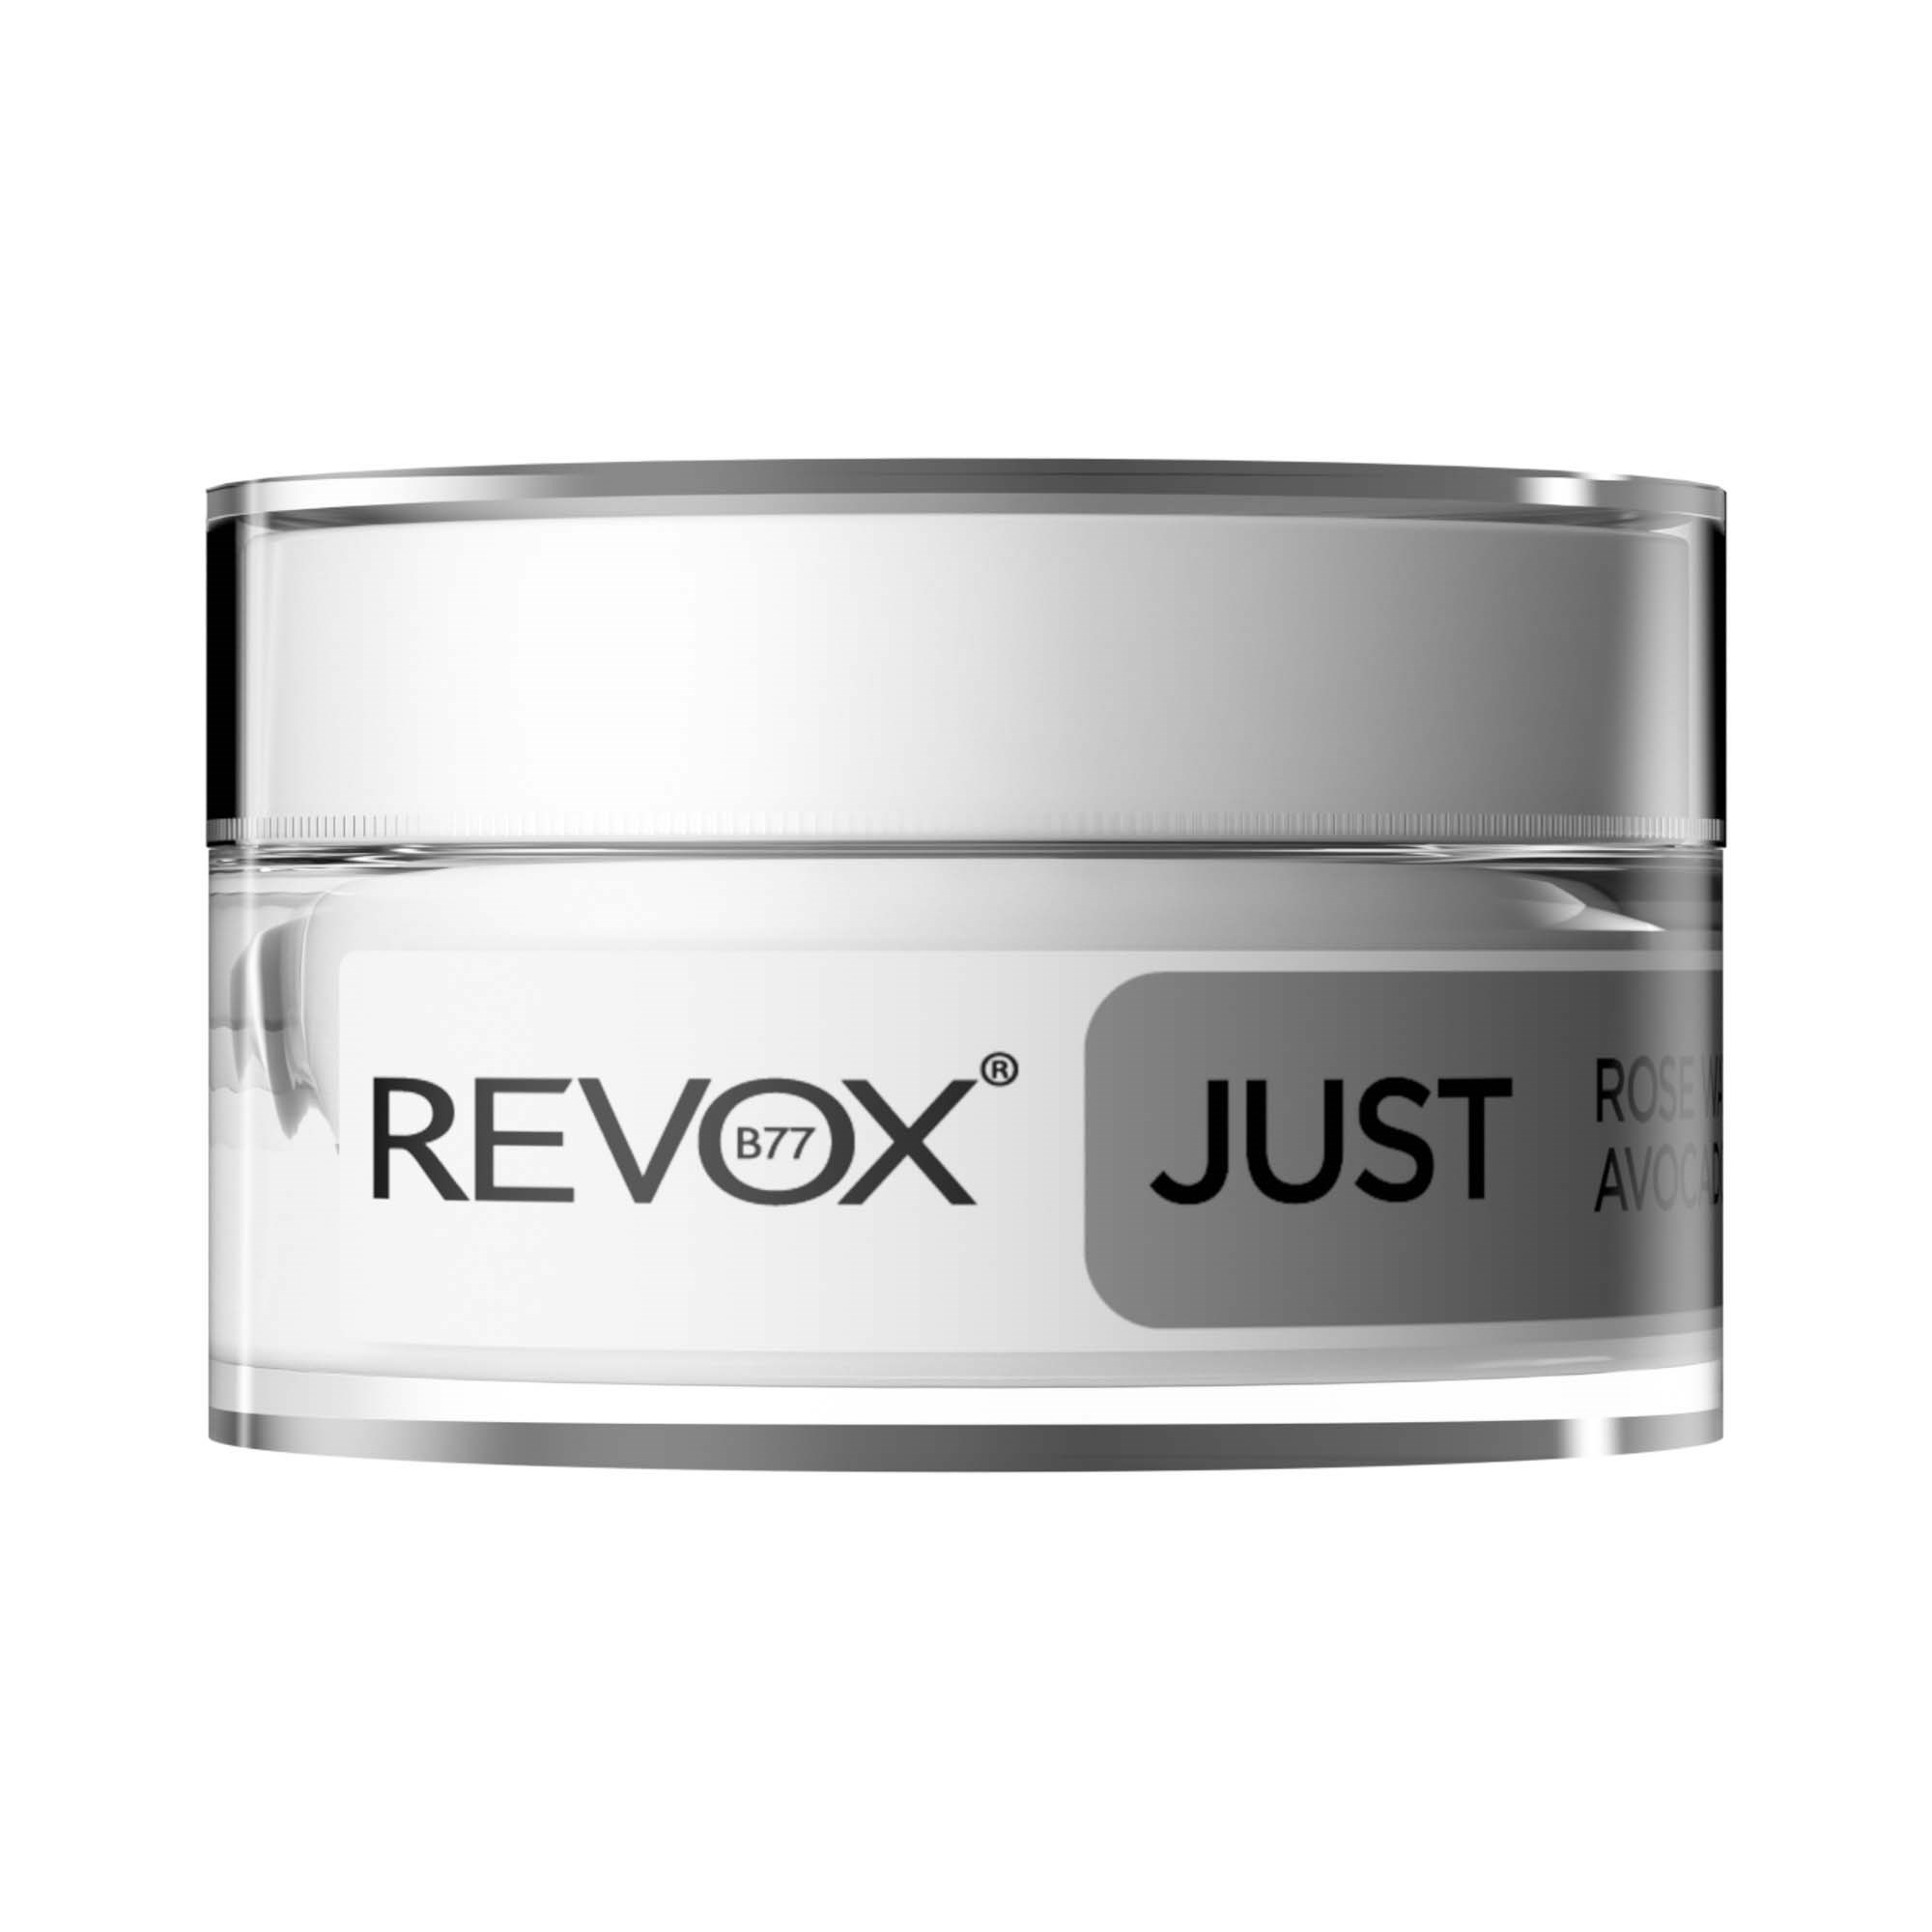 Revox JUST REVOX B77 Eye cream 50 ml